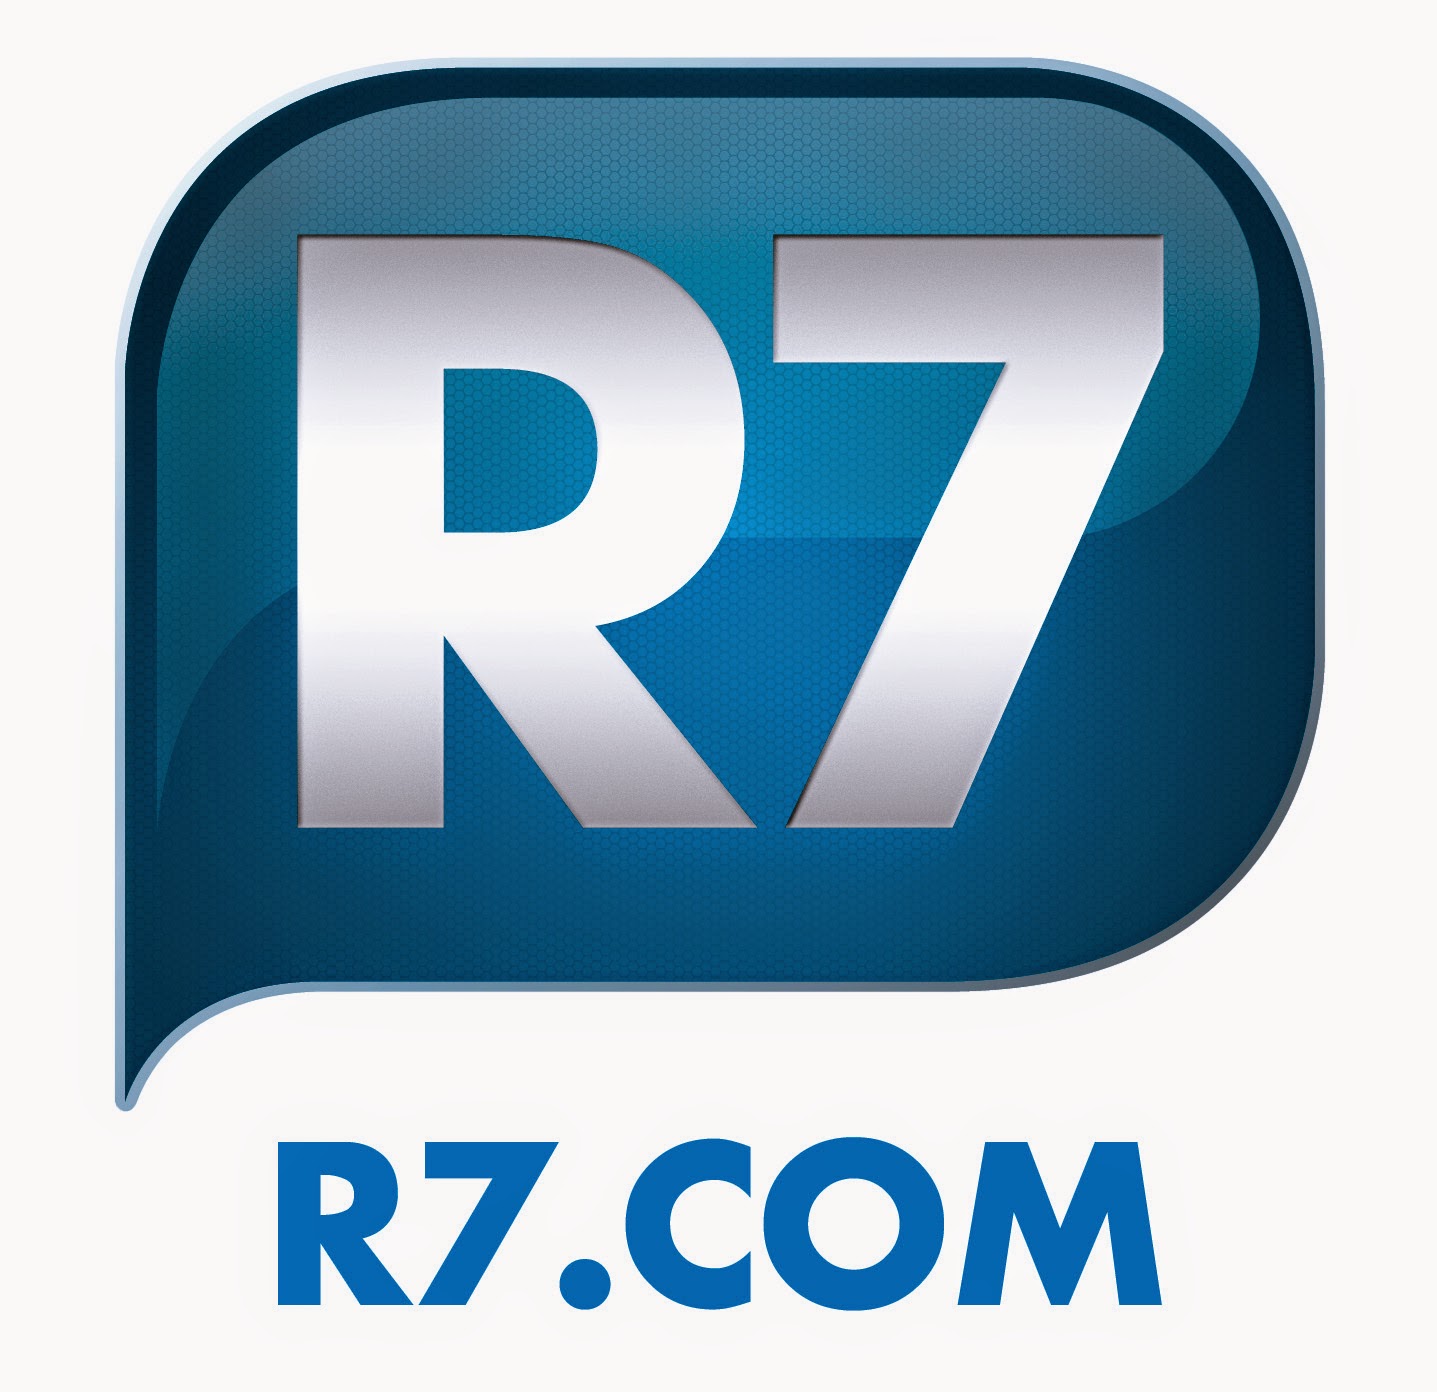 Oferecimento: R7.com